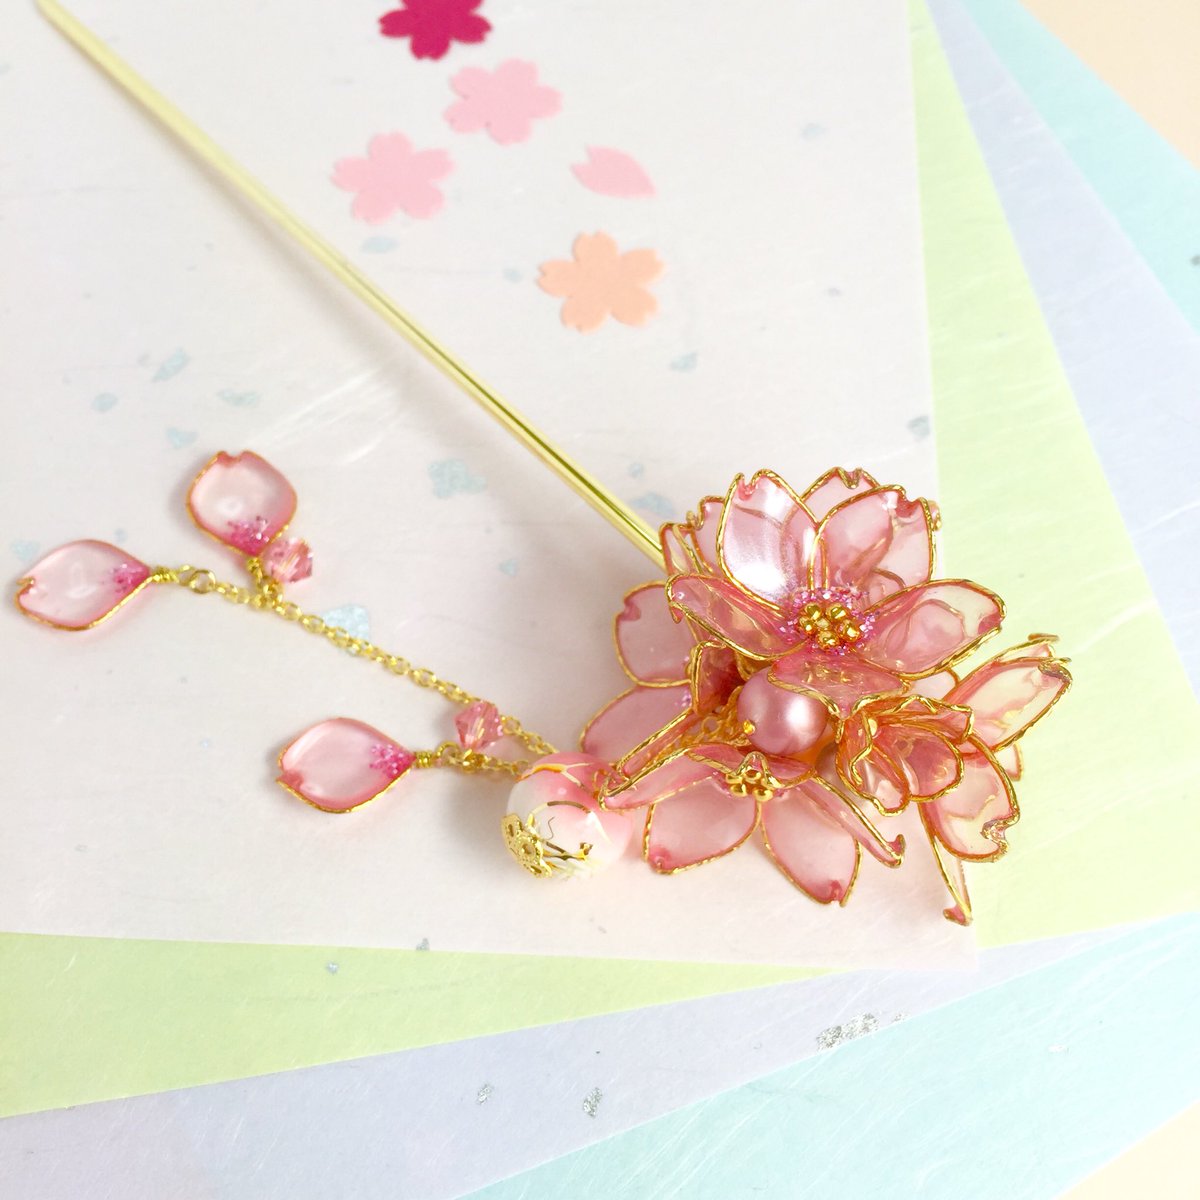 shoko_sugar-rose on Twitter: "桜の季節になりました🌸 Sugar Roseでは桜のアクセサリー、ピアス